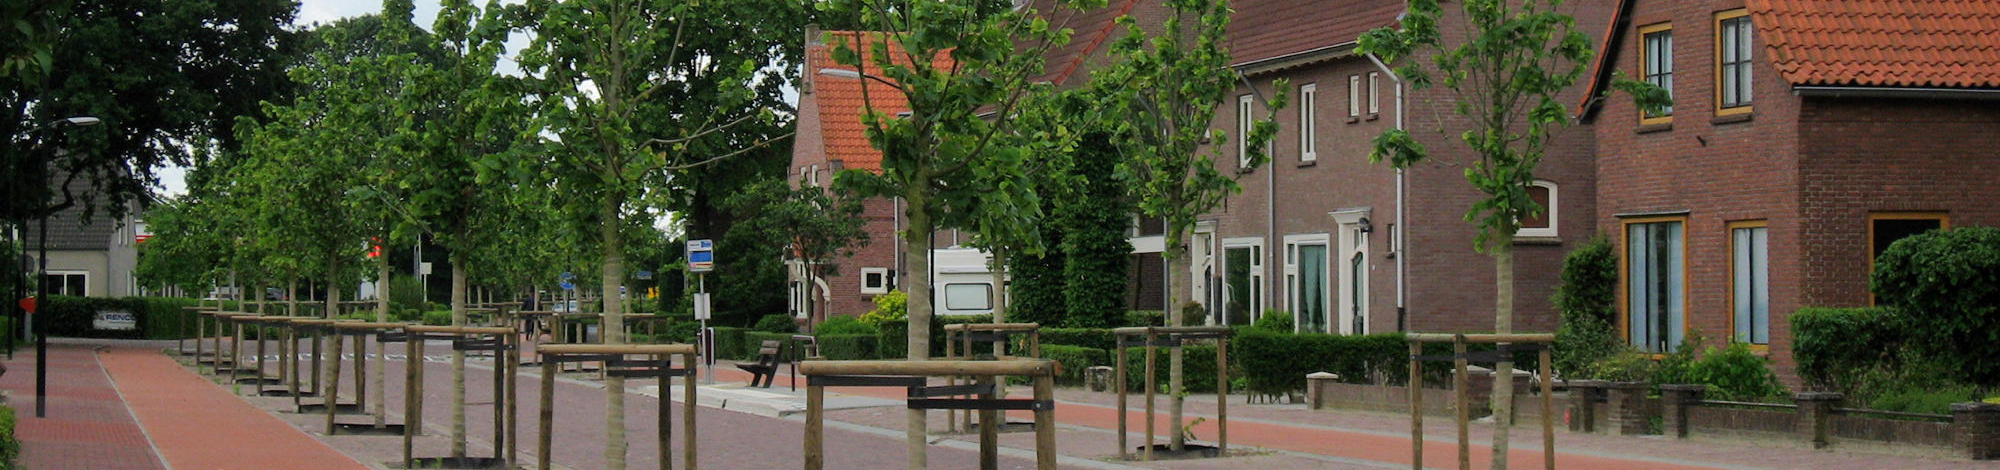 Gelderstraat Hilvarenbeek